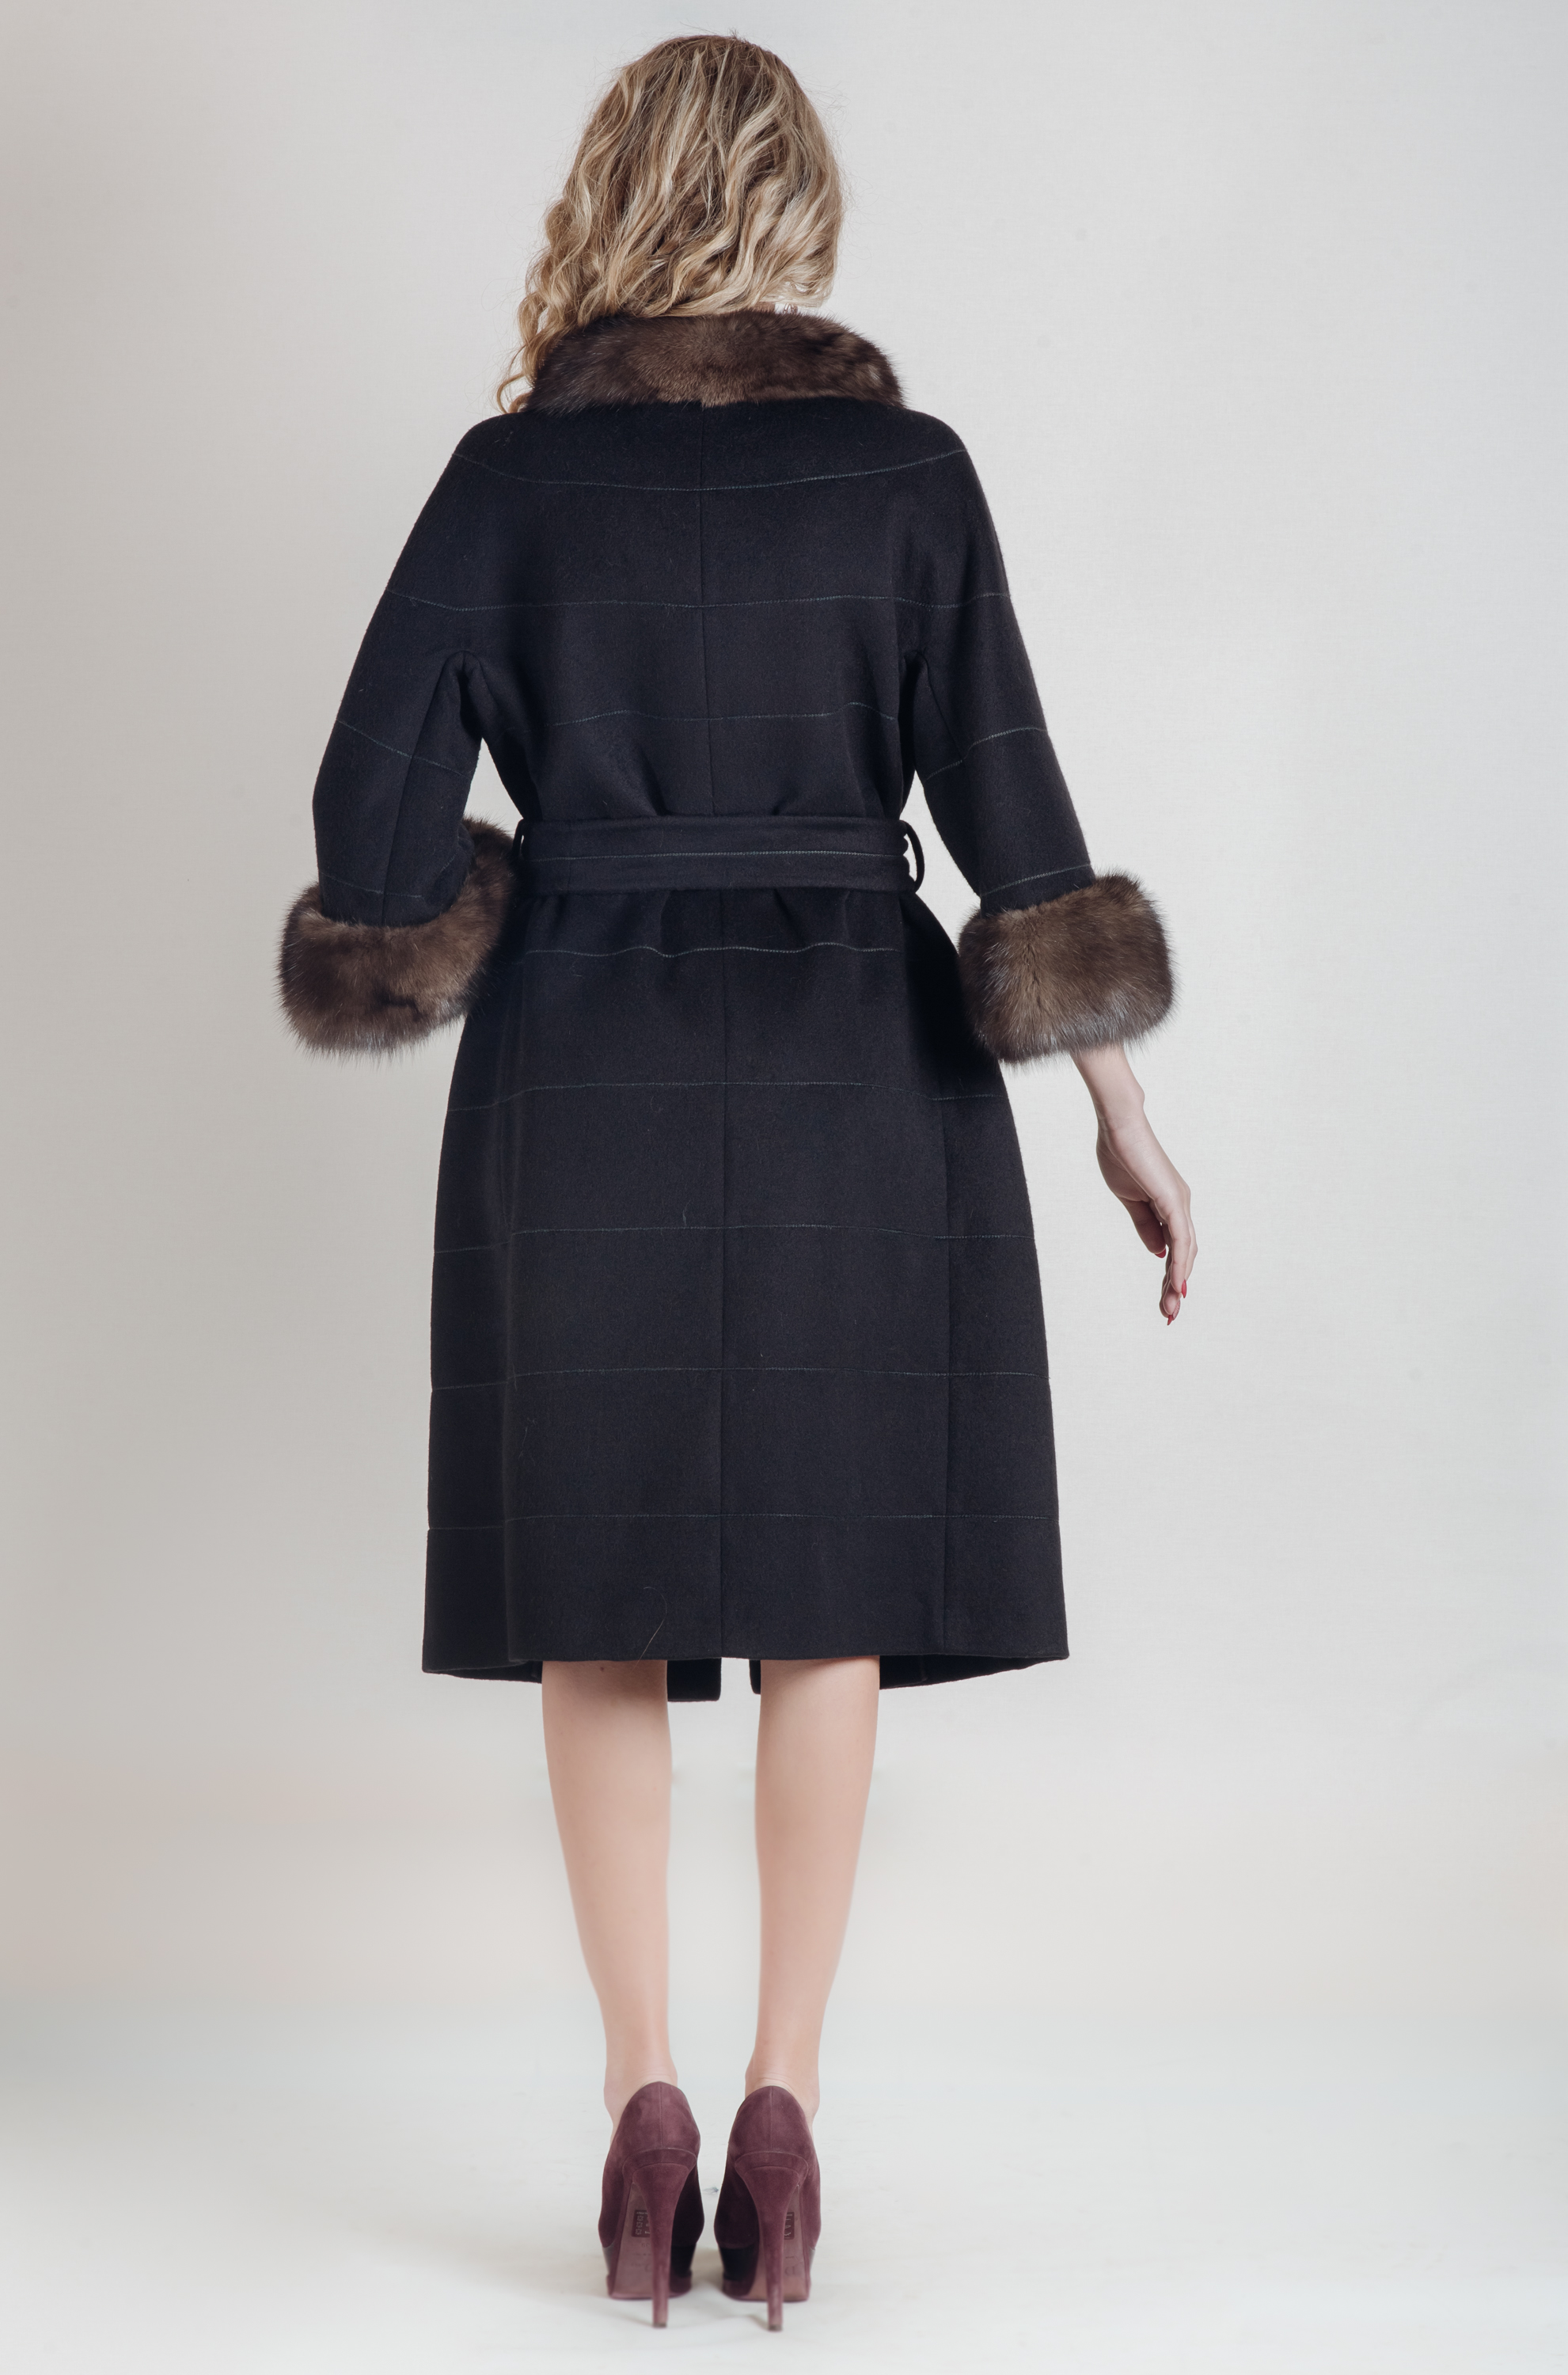 Пальто из кашемира СOLOMBO с отделкой из меха соболя, цвет  BLACK